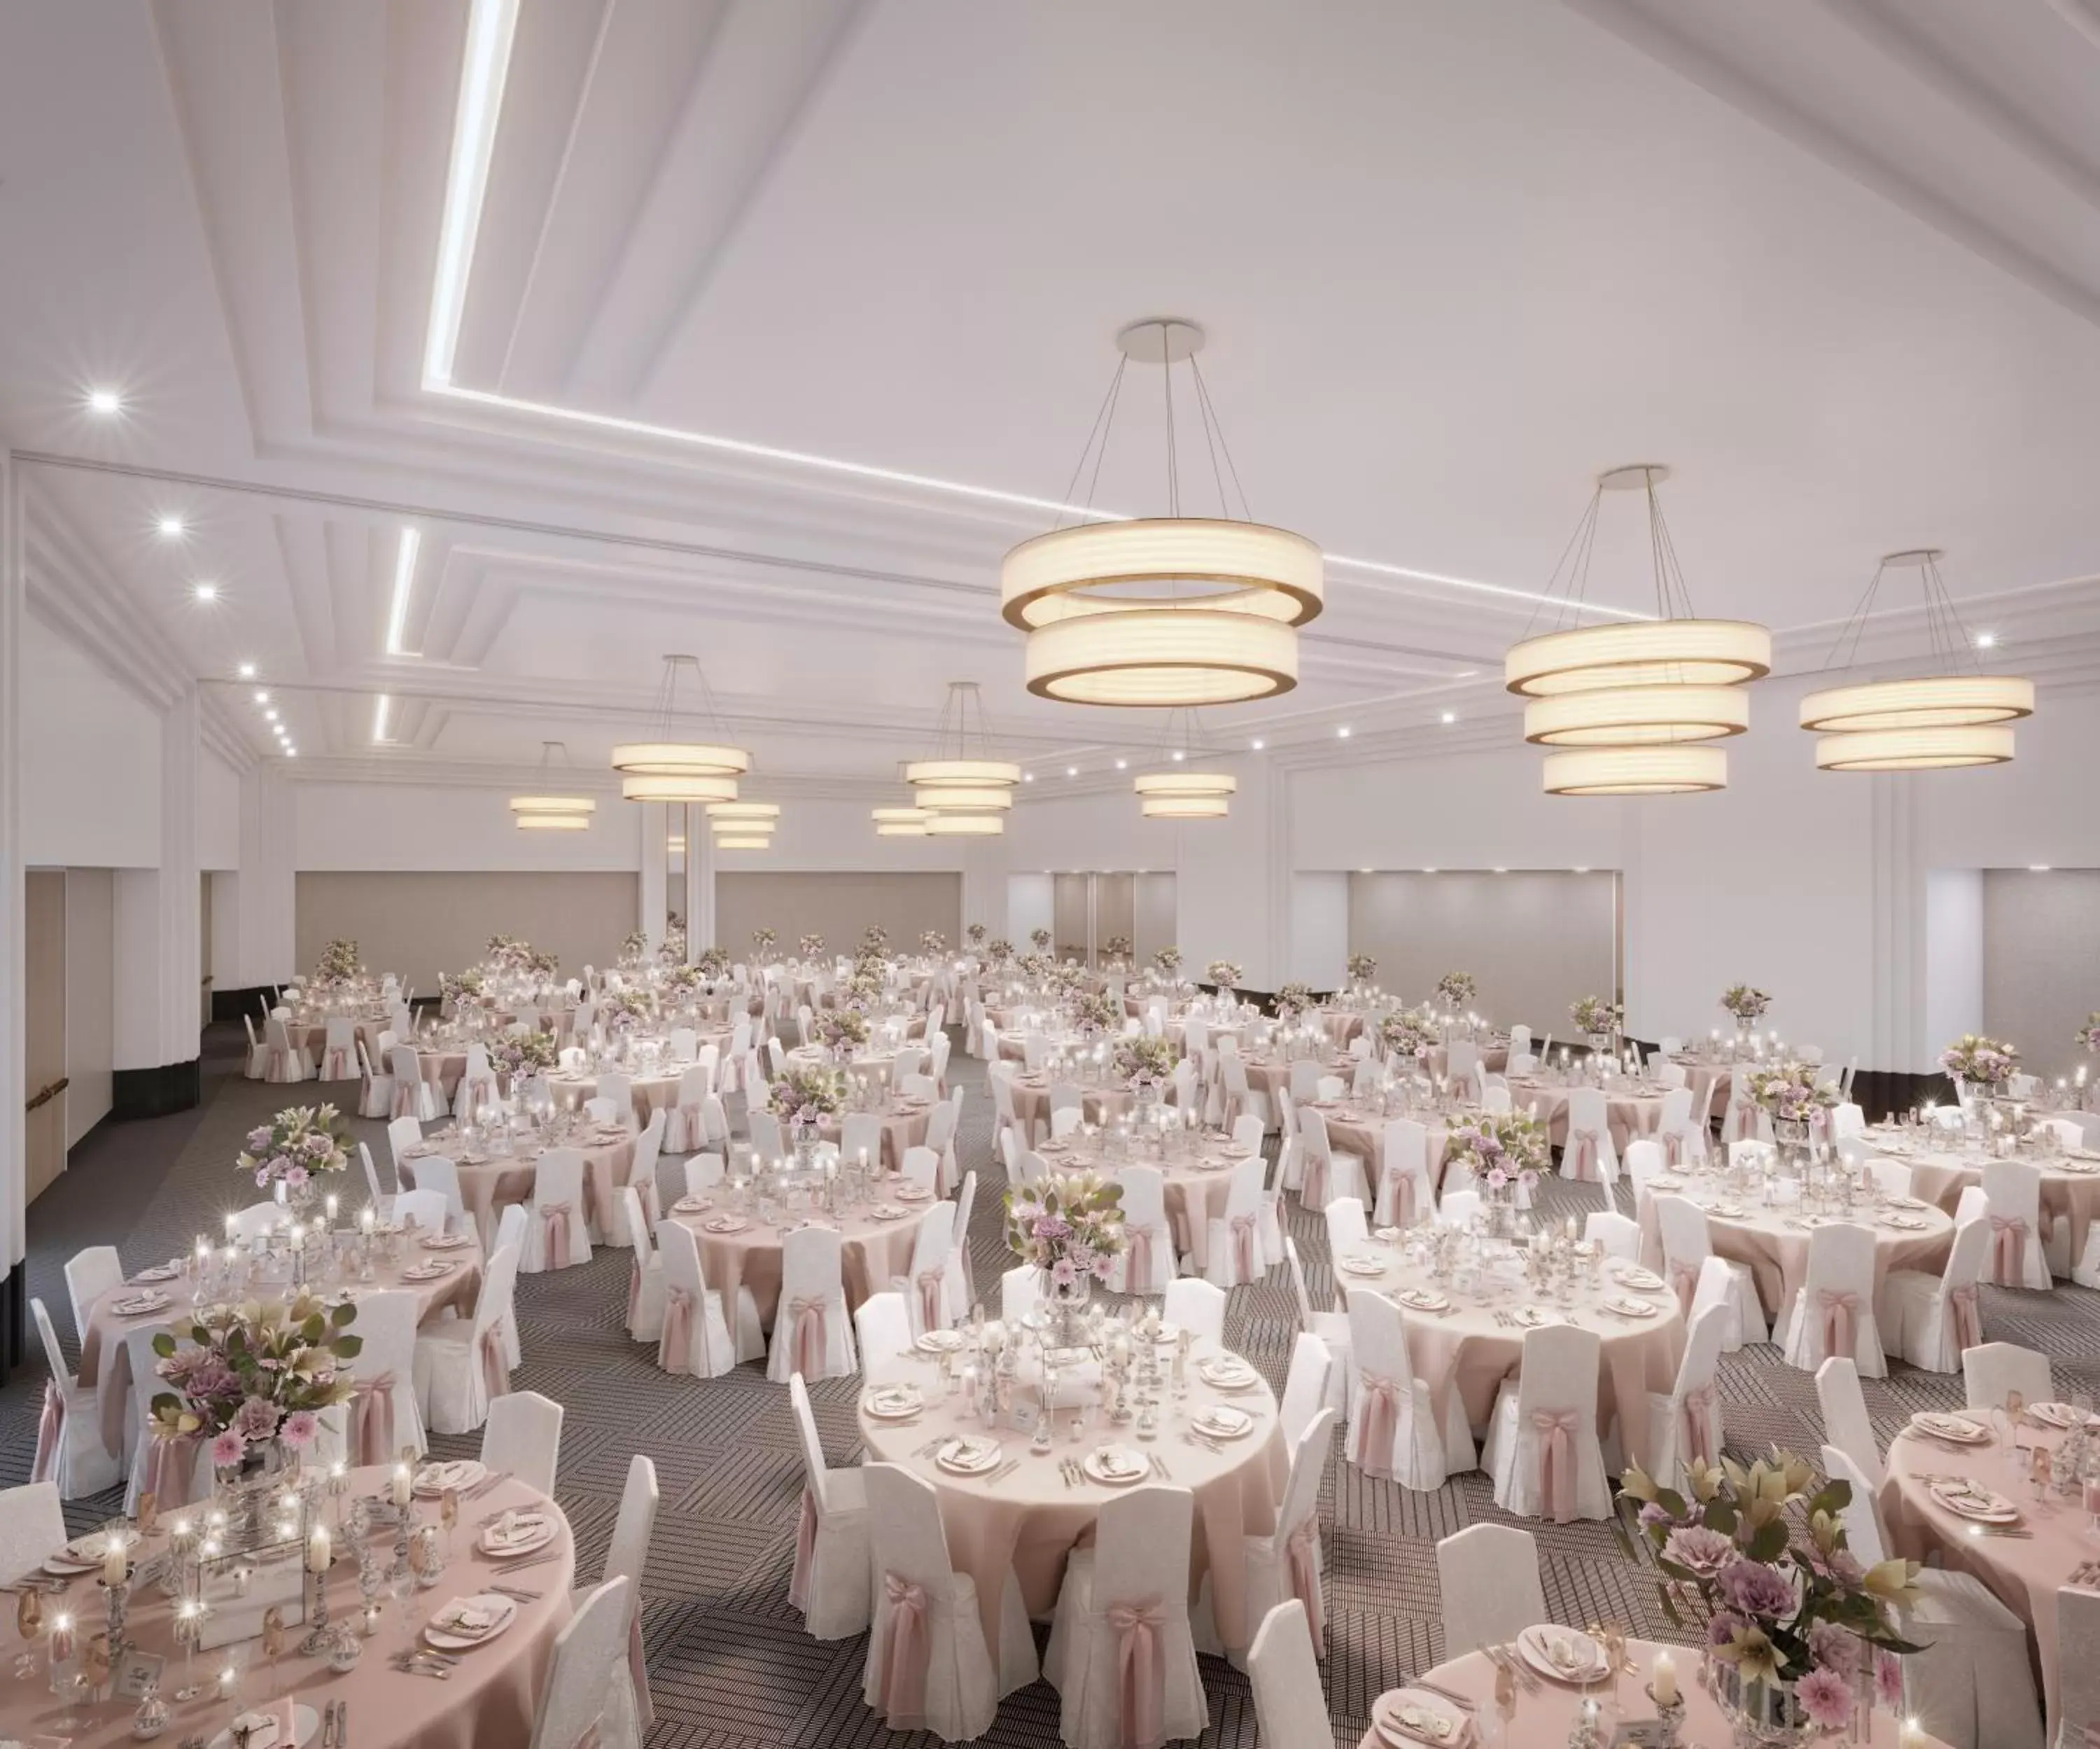 Banquet/Function facilities, Banquet Facilities in Hotel Indigo - Williamsburg - Brooklyn, an IHG Hotel